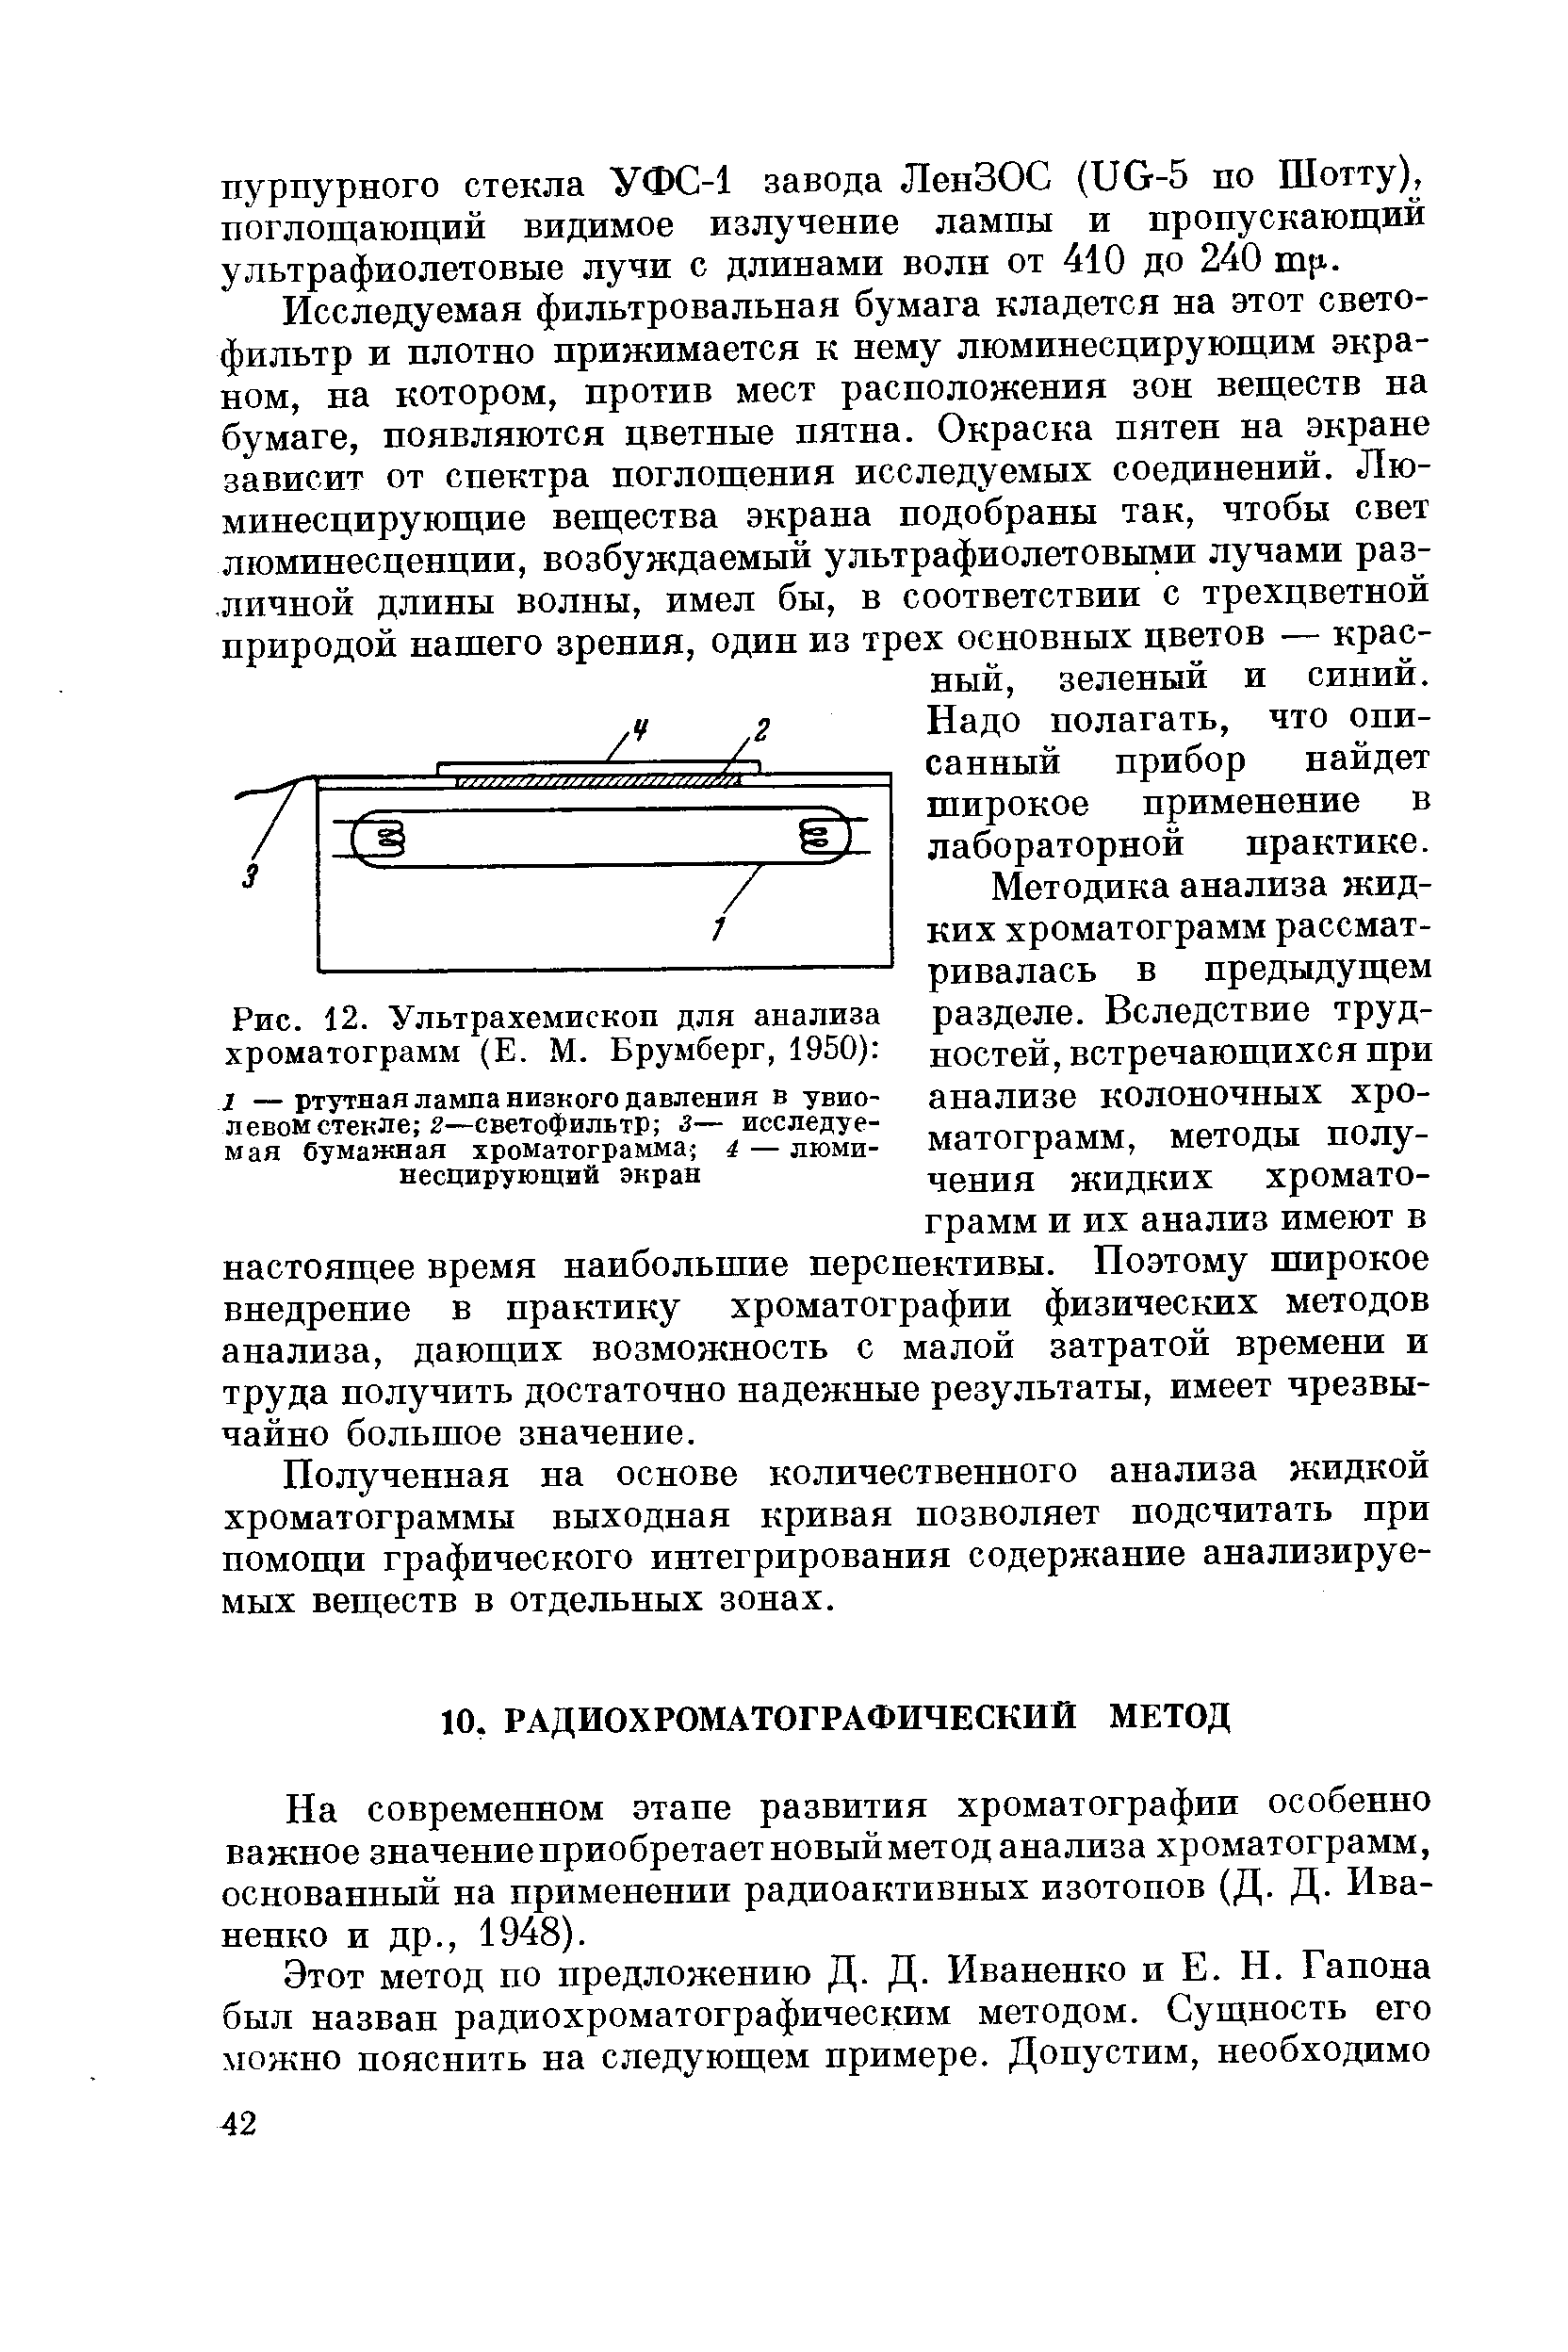 На современном этапе развития хроматографии особенно важное значениеприобретаетновыйметод анализа хроматограмм, основанный на применении радиоактивных изотопов (Д- Д- Иваненко и др., 1948).